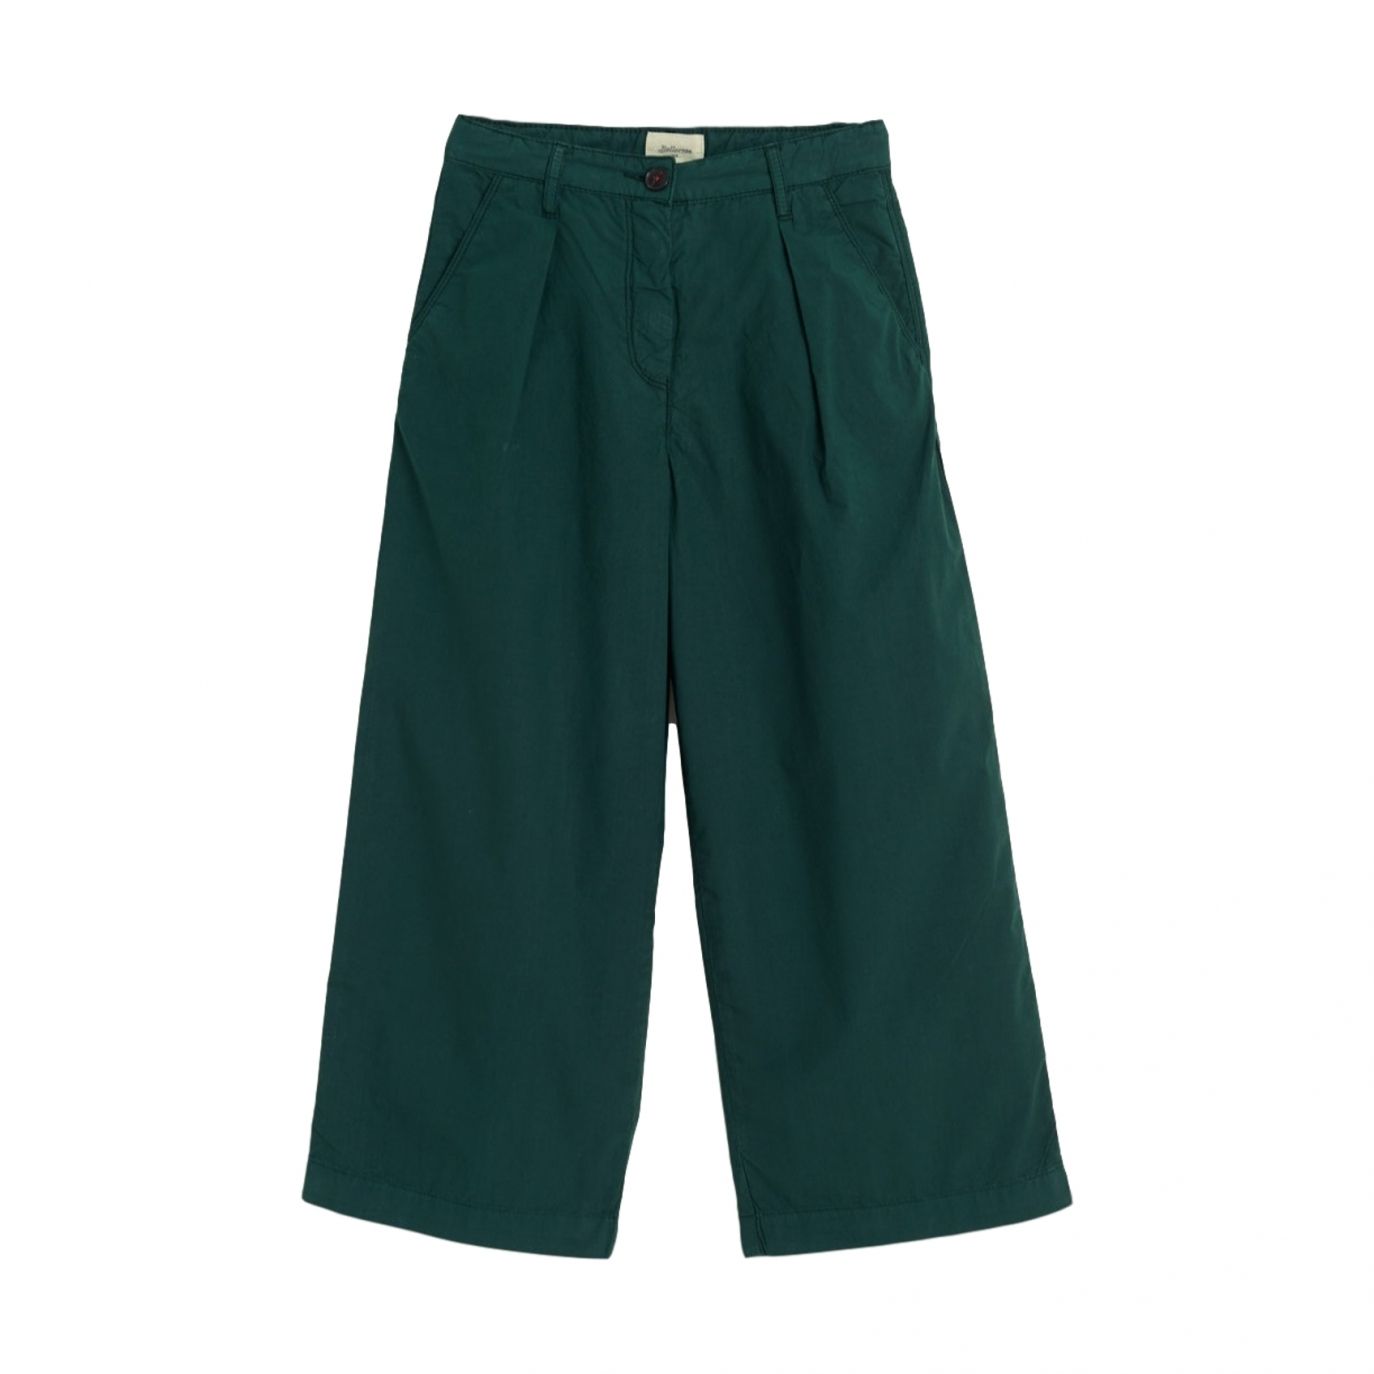 Bellerose - Papa201 Pants Green - パンツとレギンス - BK201101 R0740 